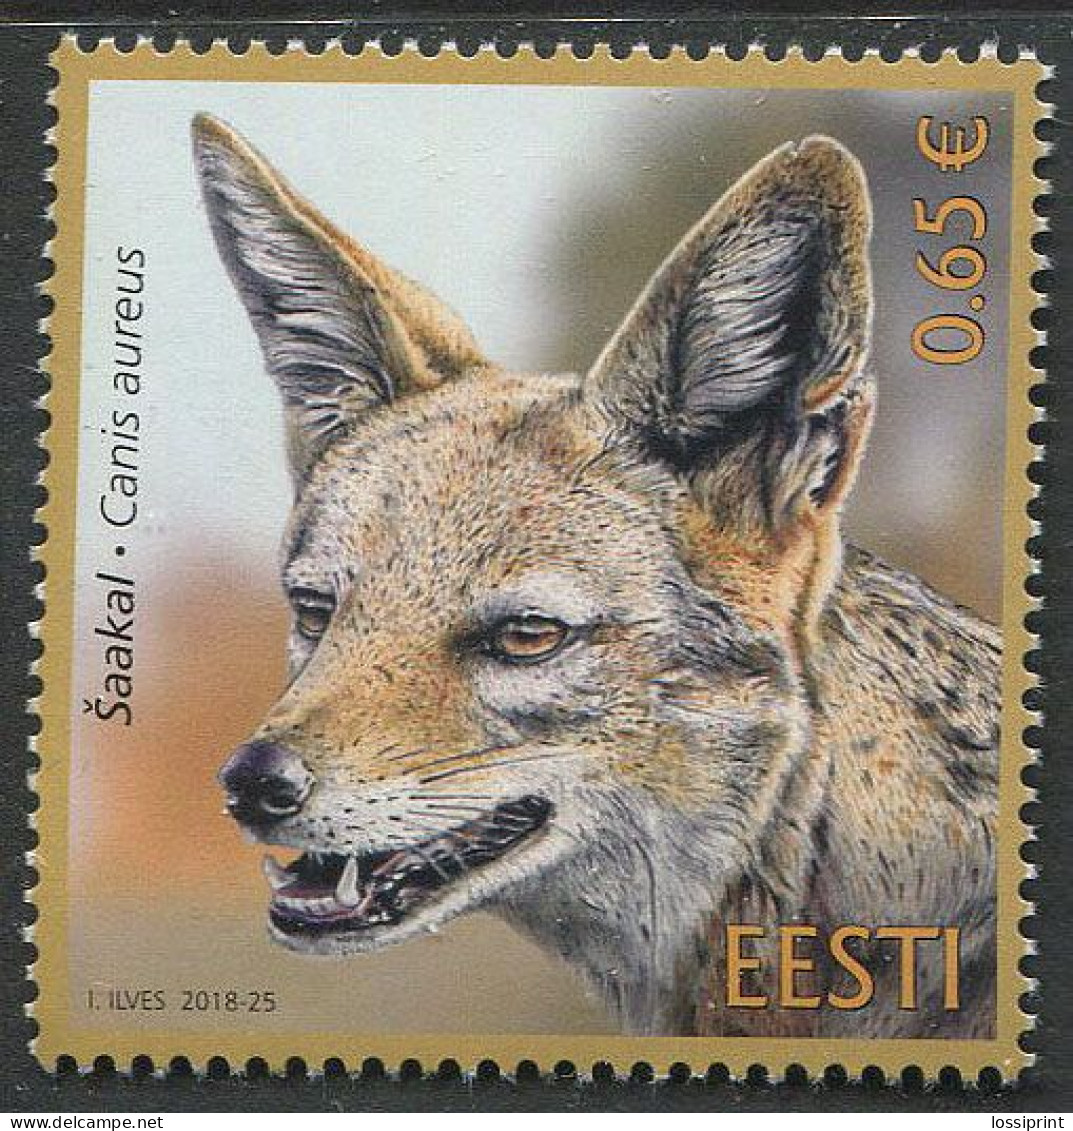 Estonia:Unused Stamp Animal, Jackal, Canis Aureus, 2018, MNH - Estonia